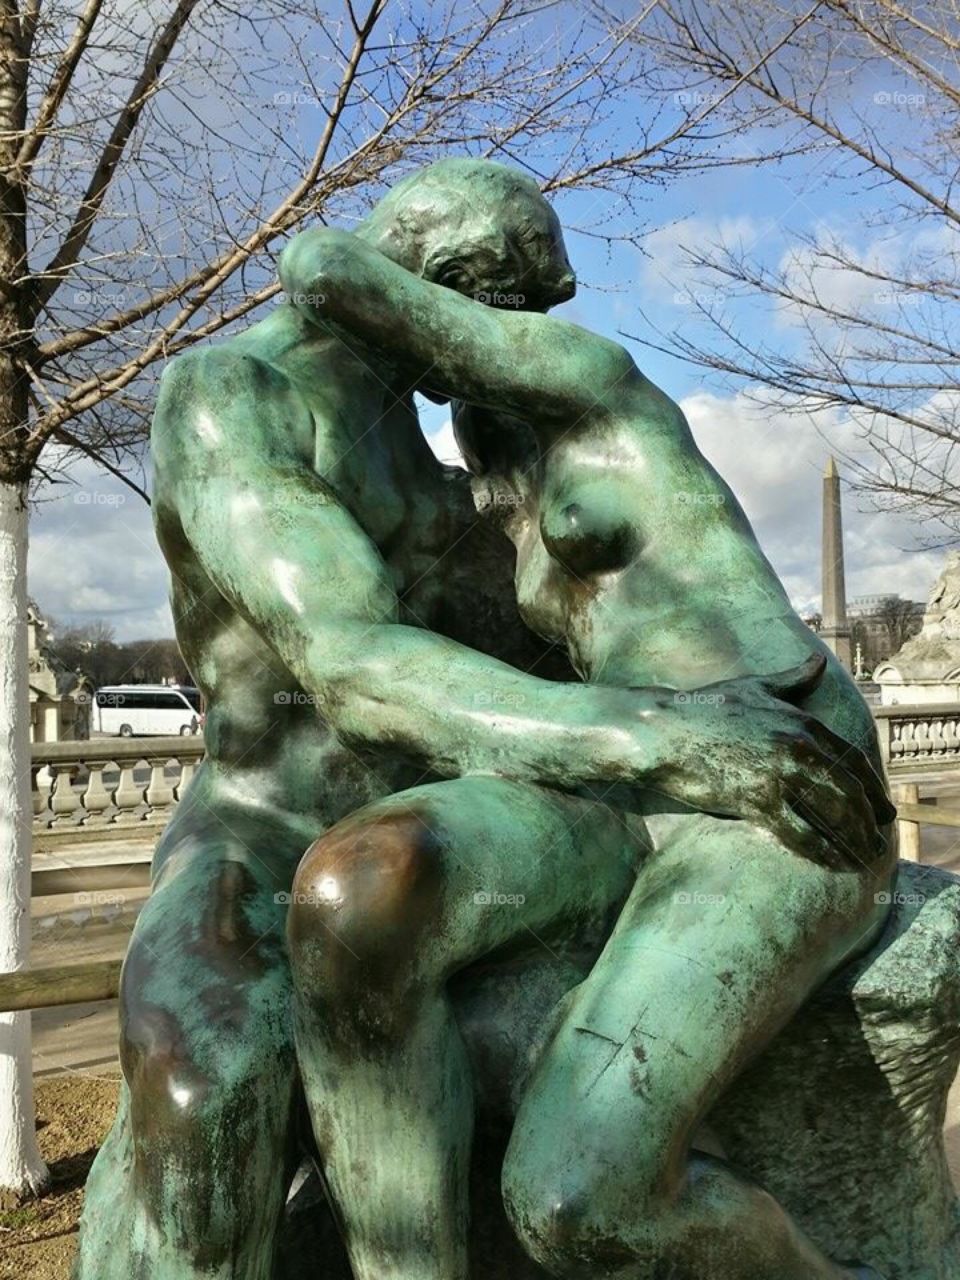 Auguste Rodin, “The Kiss” (Paris)